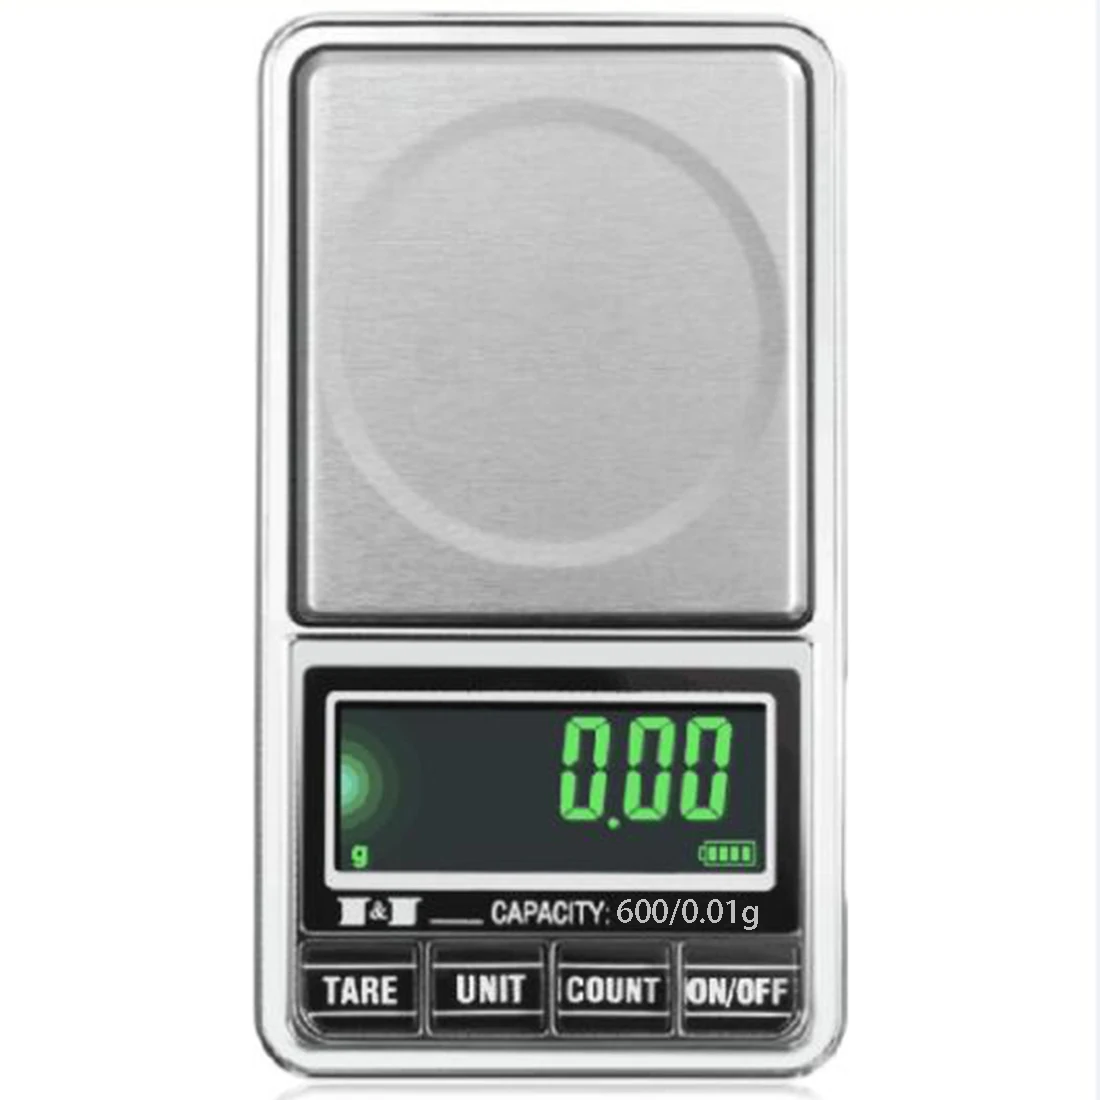 100 г-600 г x 0,01 г Электронные весы с питанием от USB цифровые карманные весы ювелирные весы Баланс joyeria balanca весы